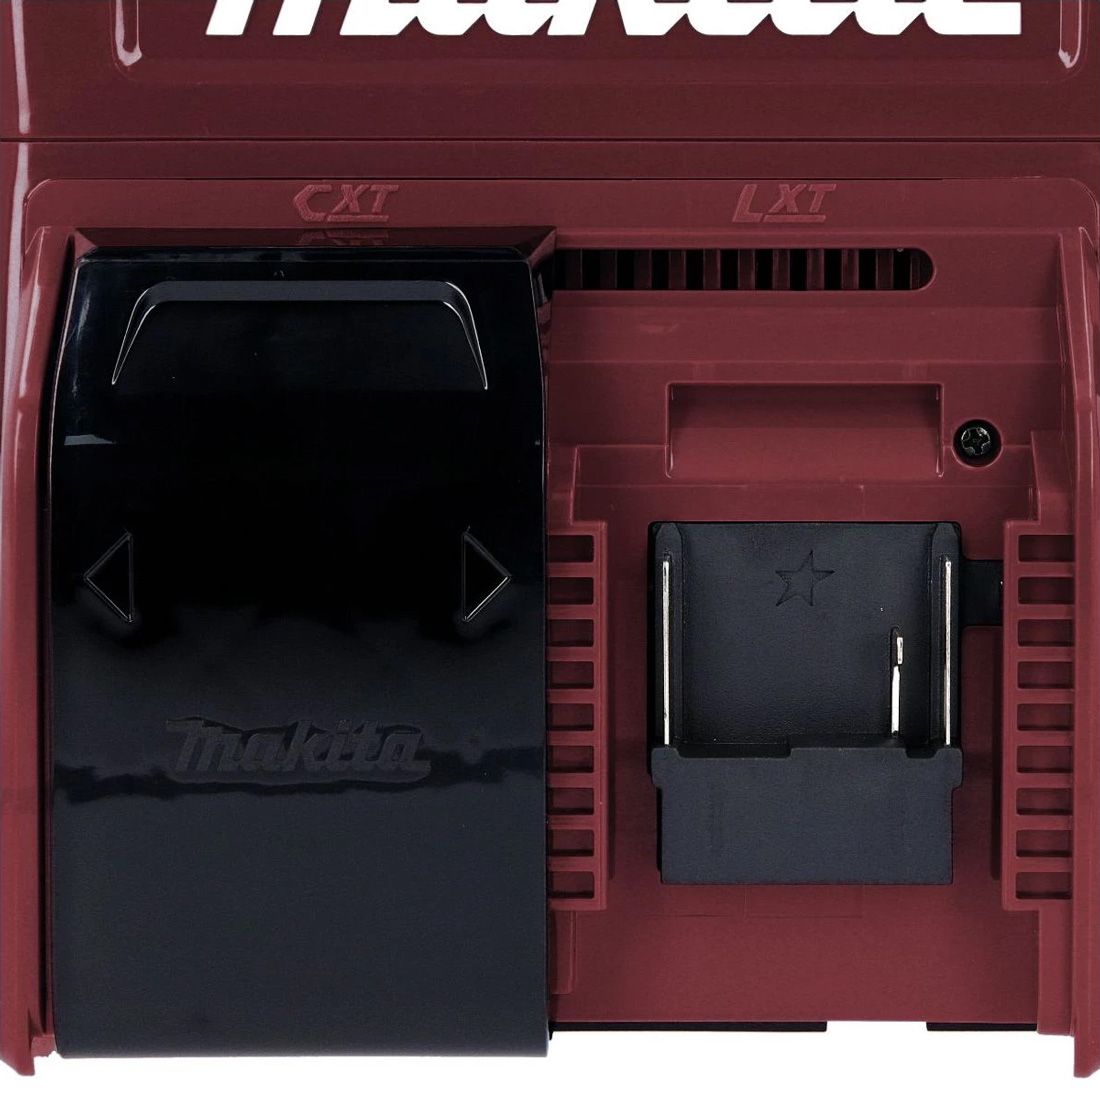 Makita DCM501ZAR 18V Cordless Coffee Maker, Red